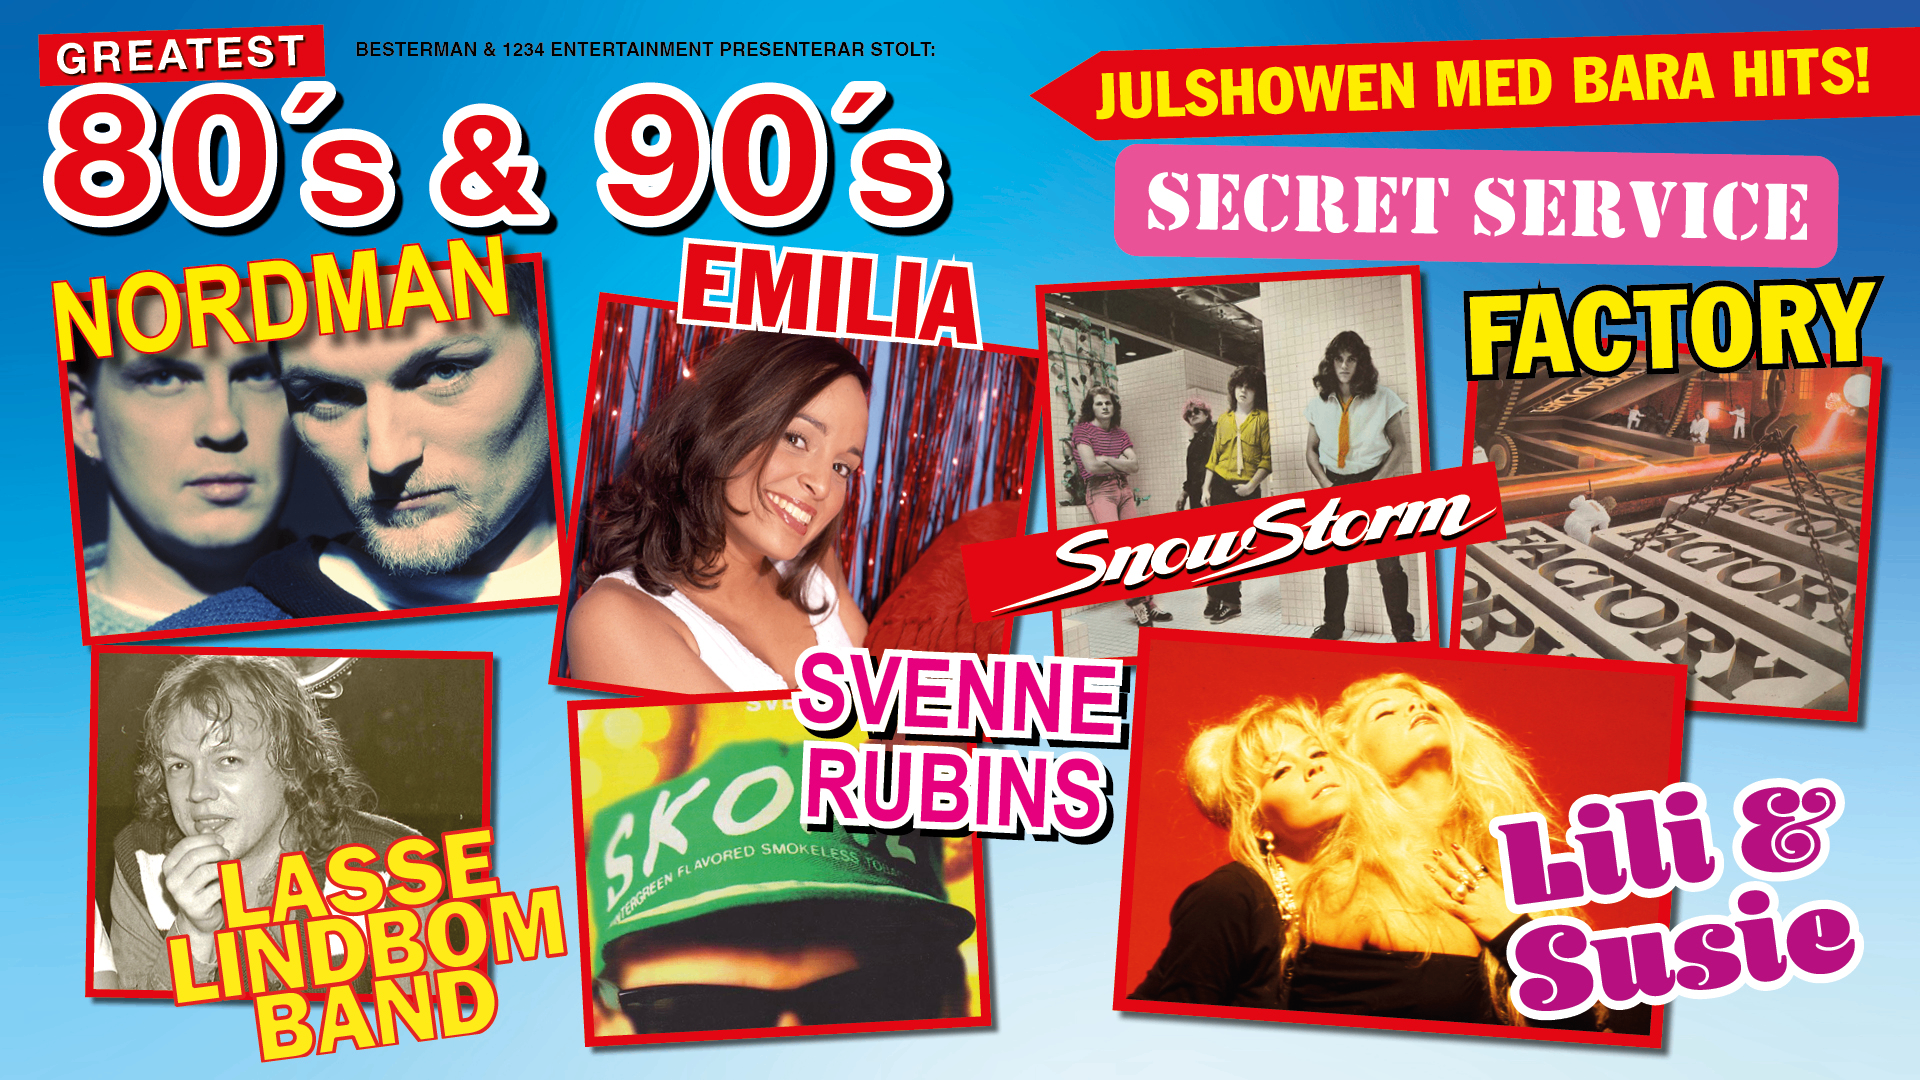 Bildbeskrivning saknas för evenemanget: Greatest 80s & 90s - Julshowen med bara hits - INSTÄLLT